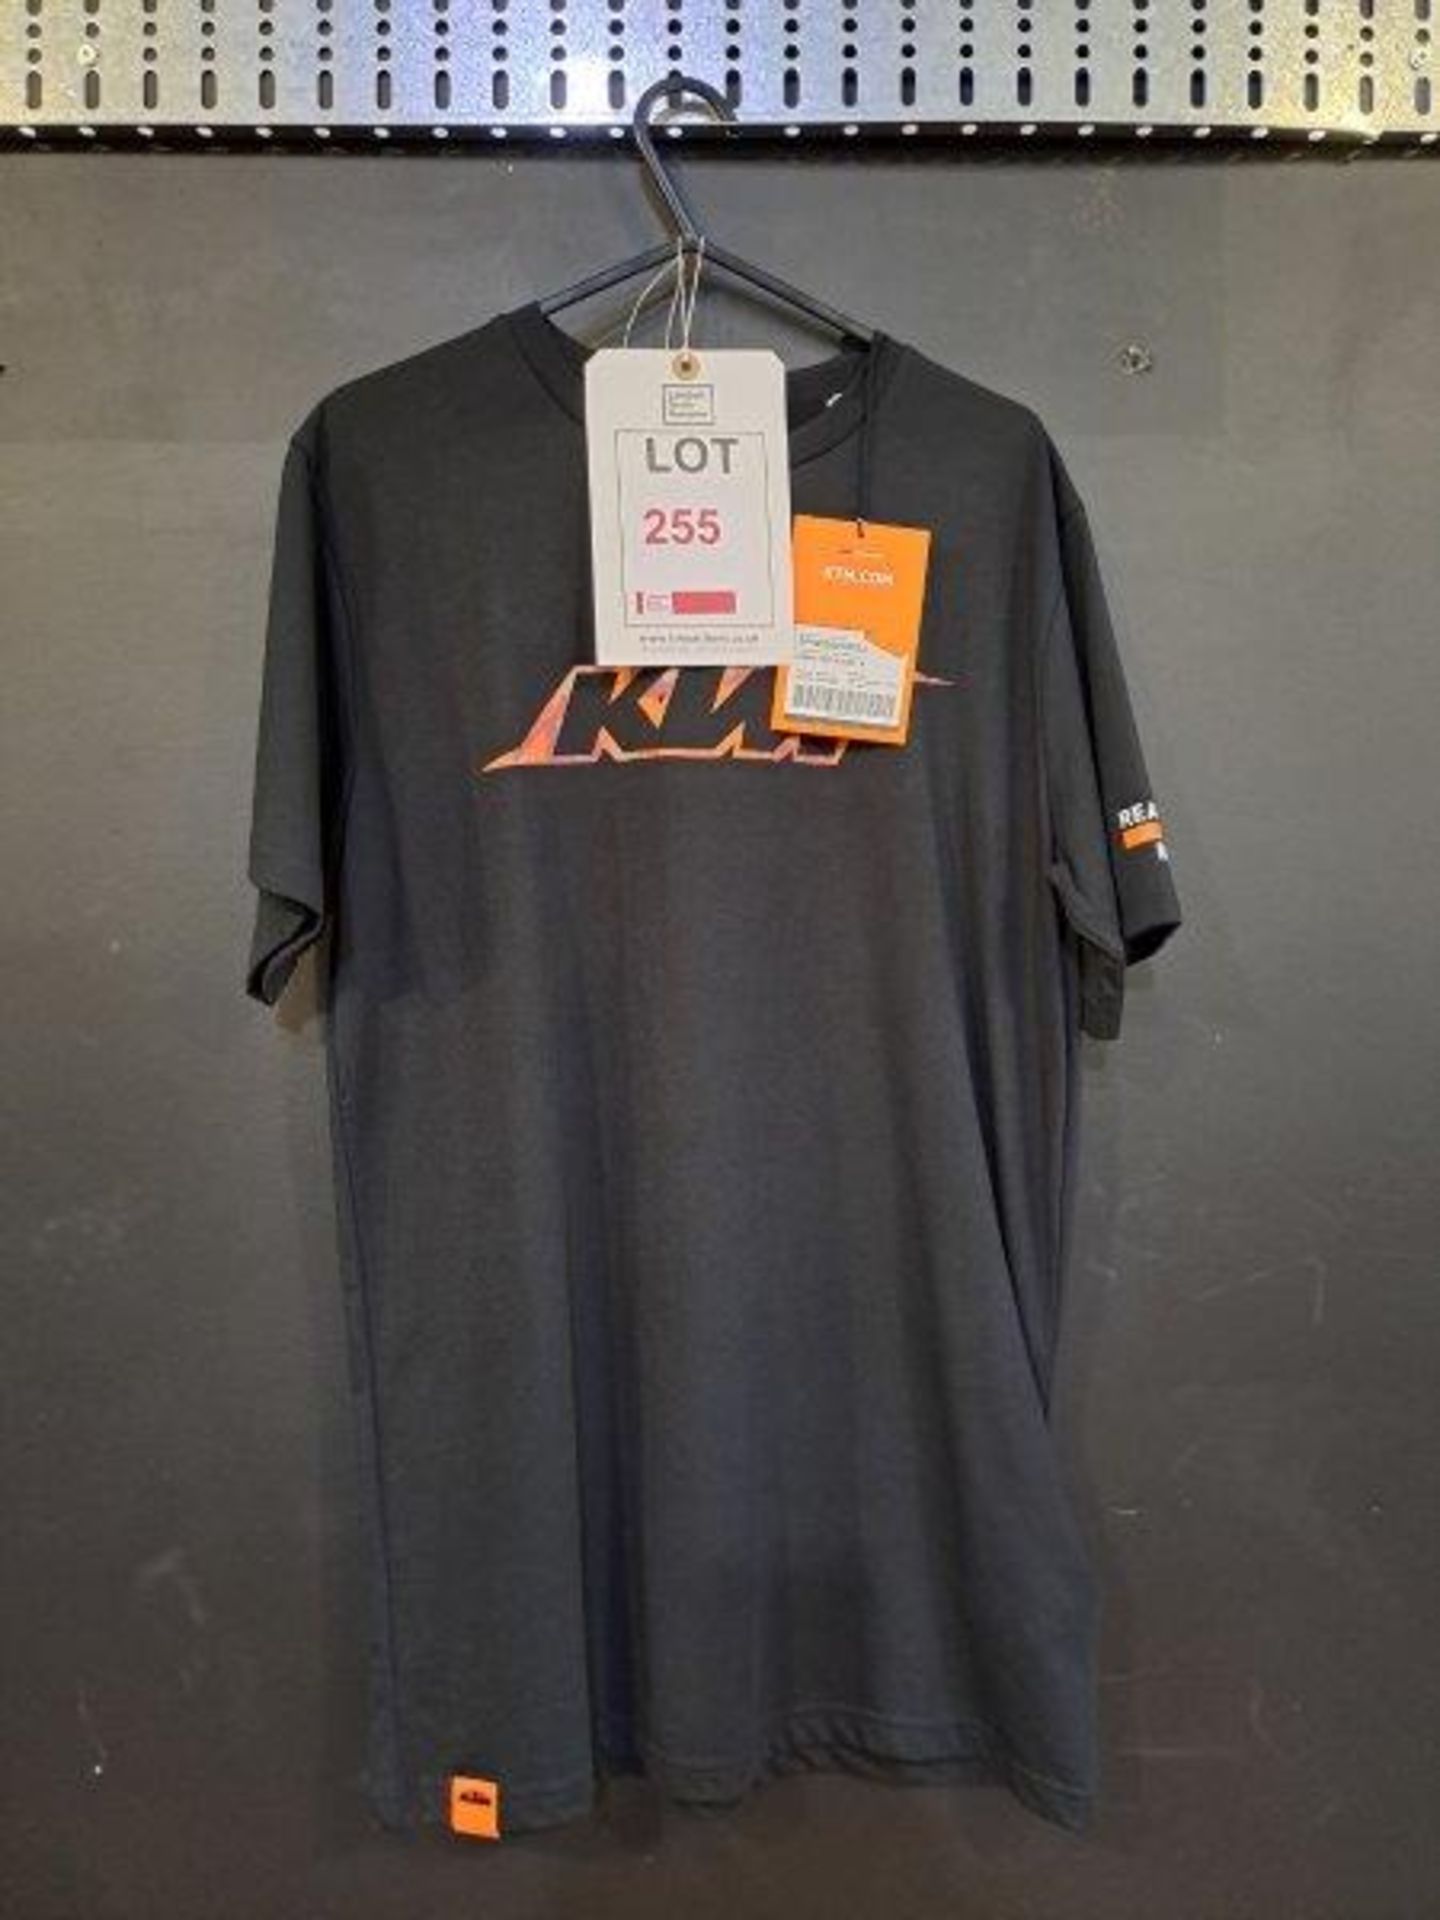 KTM Fashion Clothing - Image 4 of 11